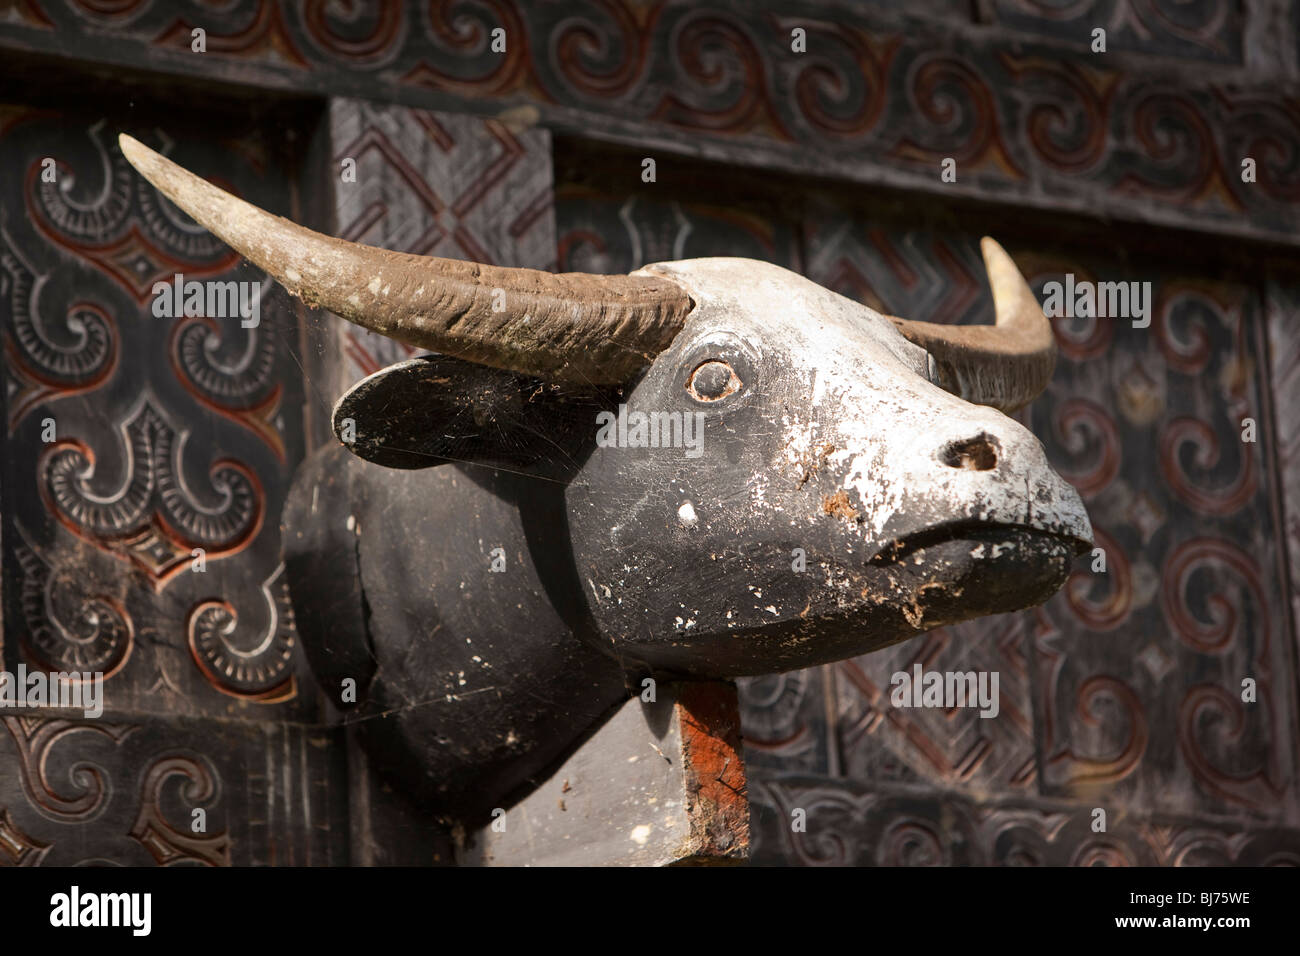 L'Indonésie, Sulawesi, Tana Toraja, Lemo, traditionnelles tongkonan chambre décoration tête de buffle sculpté Banque D'Images